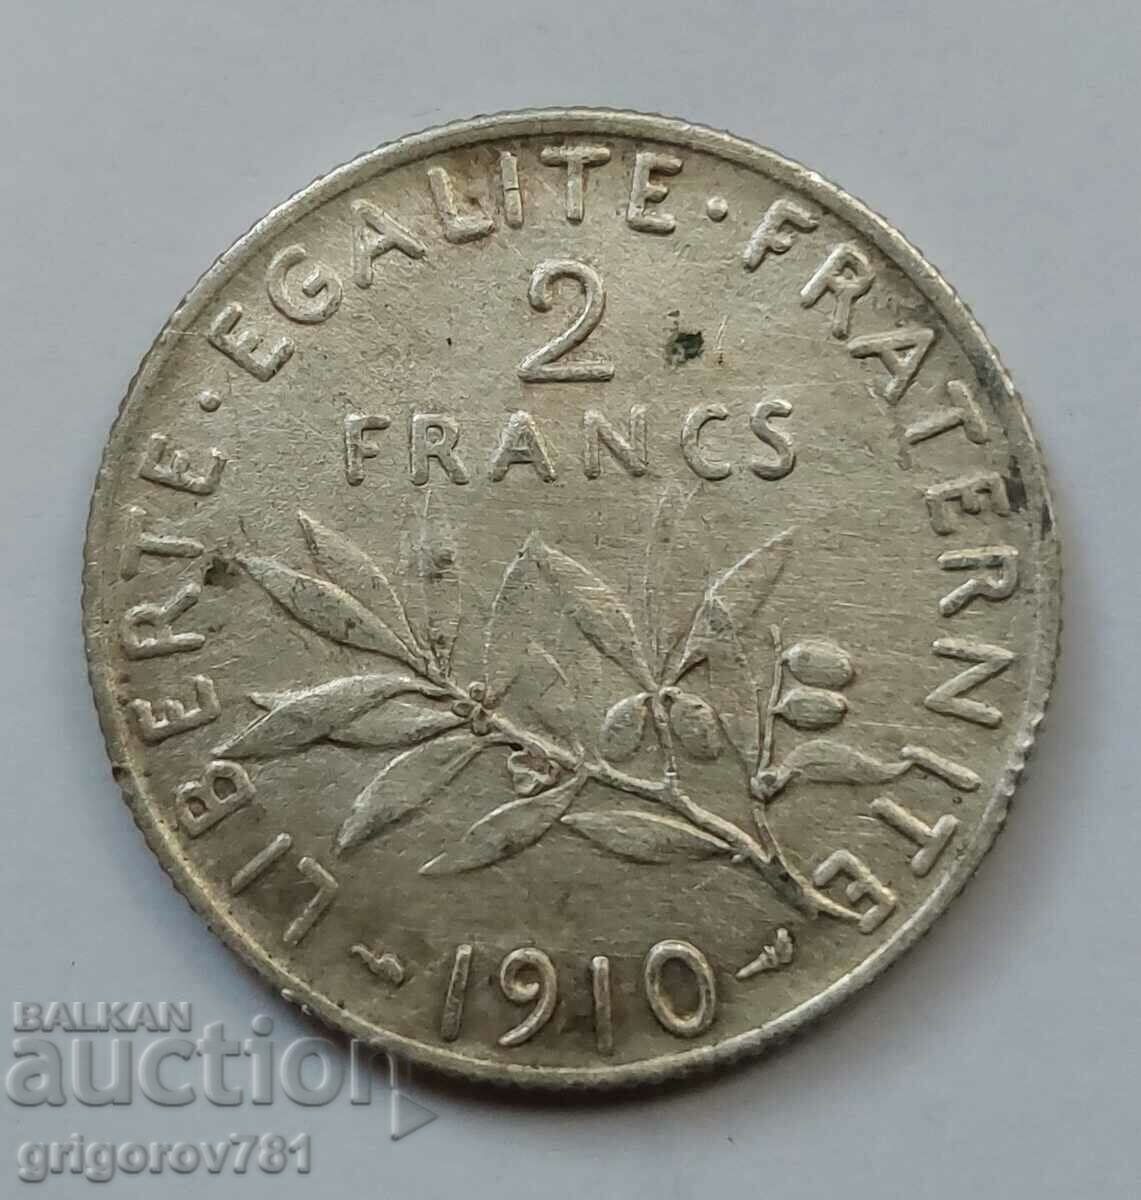 2 Φράγκα Ασήμι Γαλλία 1910 - Ασημένιο νόμισμα #34